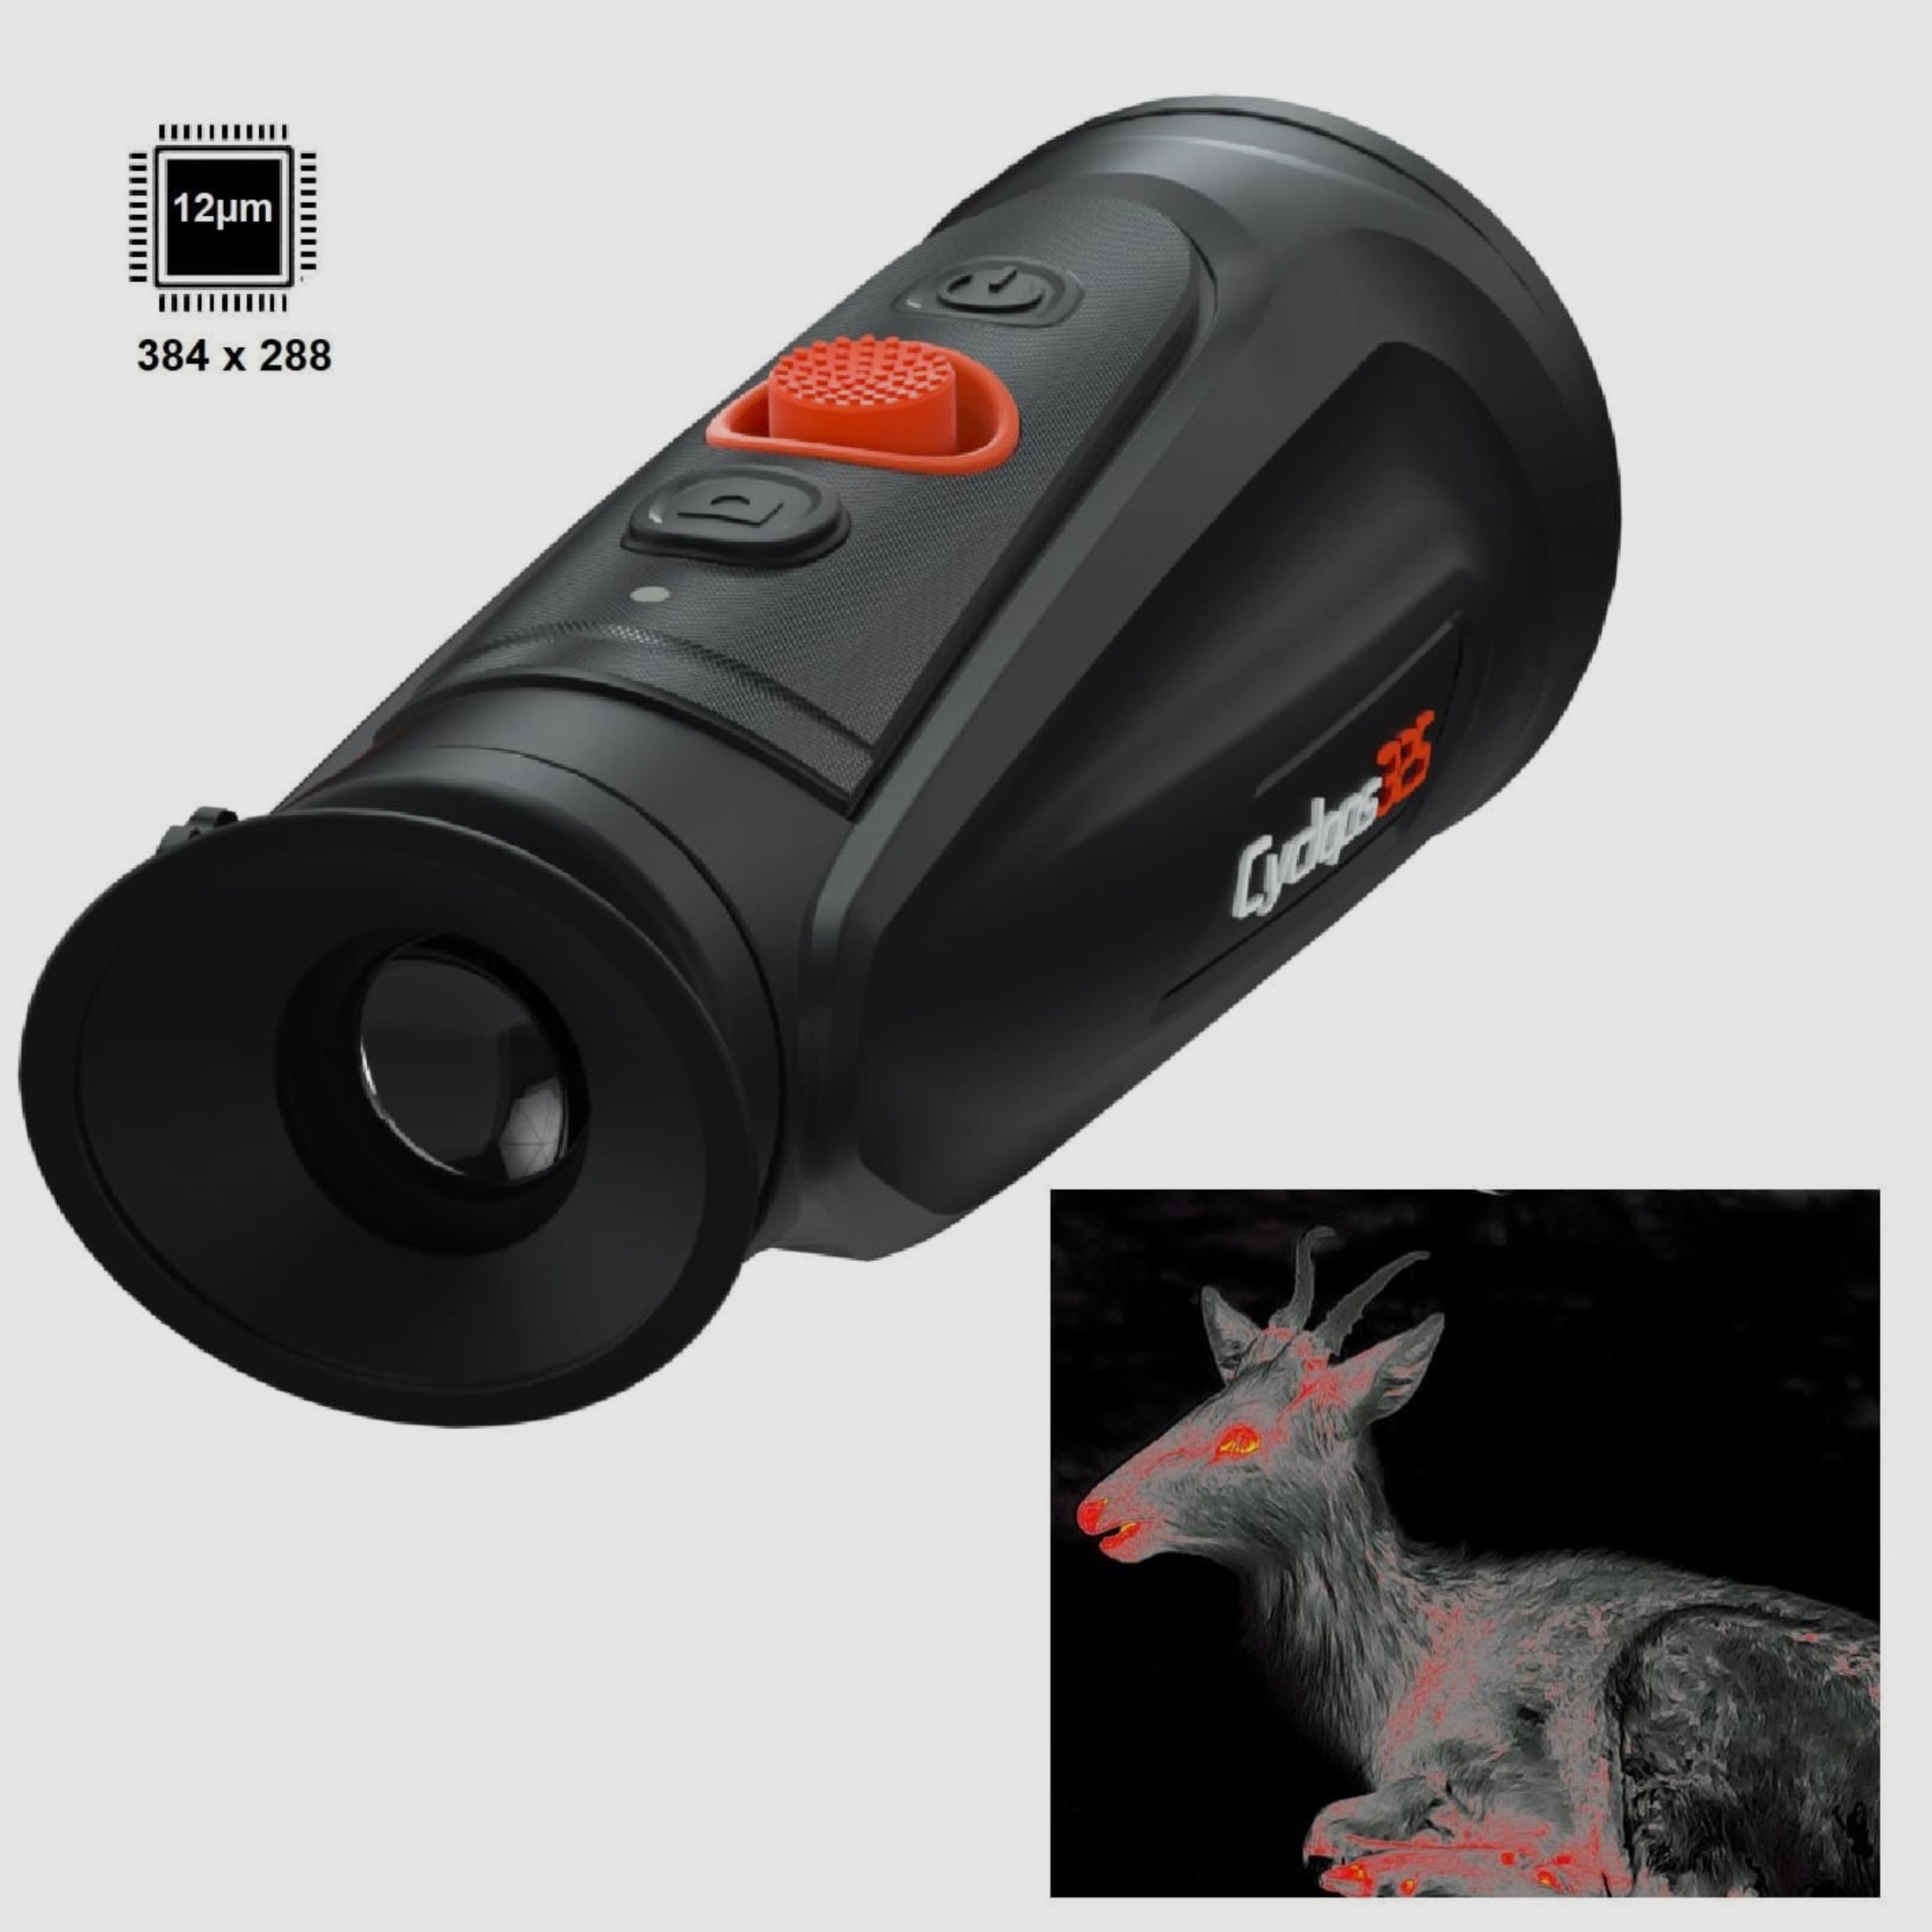 ThermTec CYCLOPS 335 V2 (Modell 2022) Wärmebildkamera